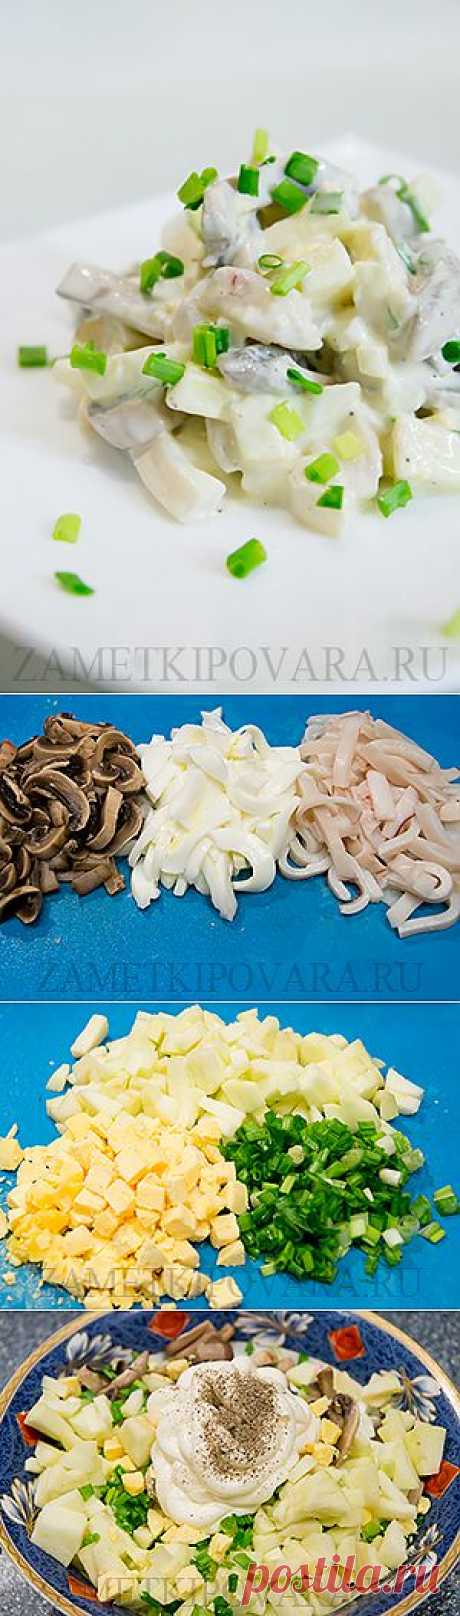 Салат с кальмарами, грибами и яблоками | Простые кулинарные рецепты с фотографиями